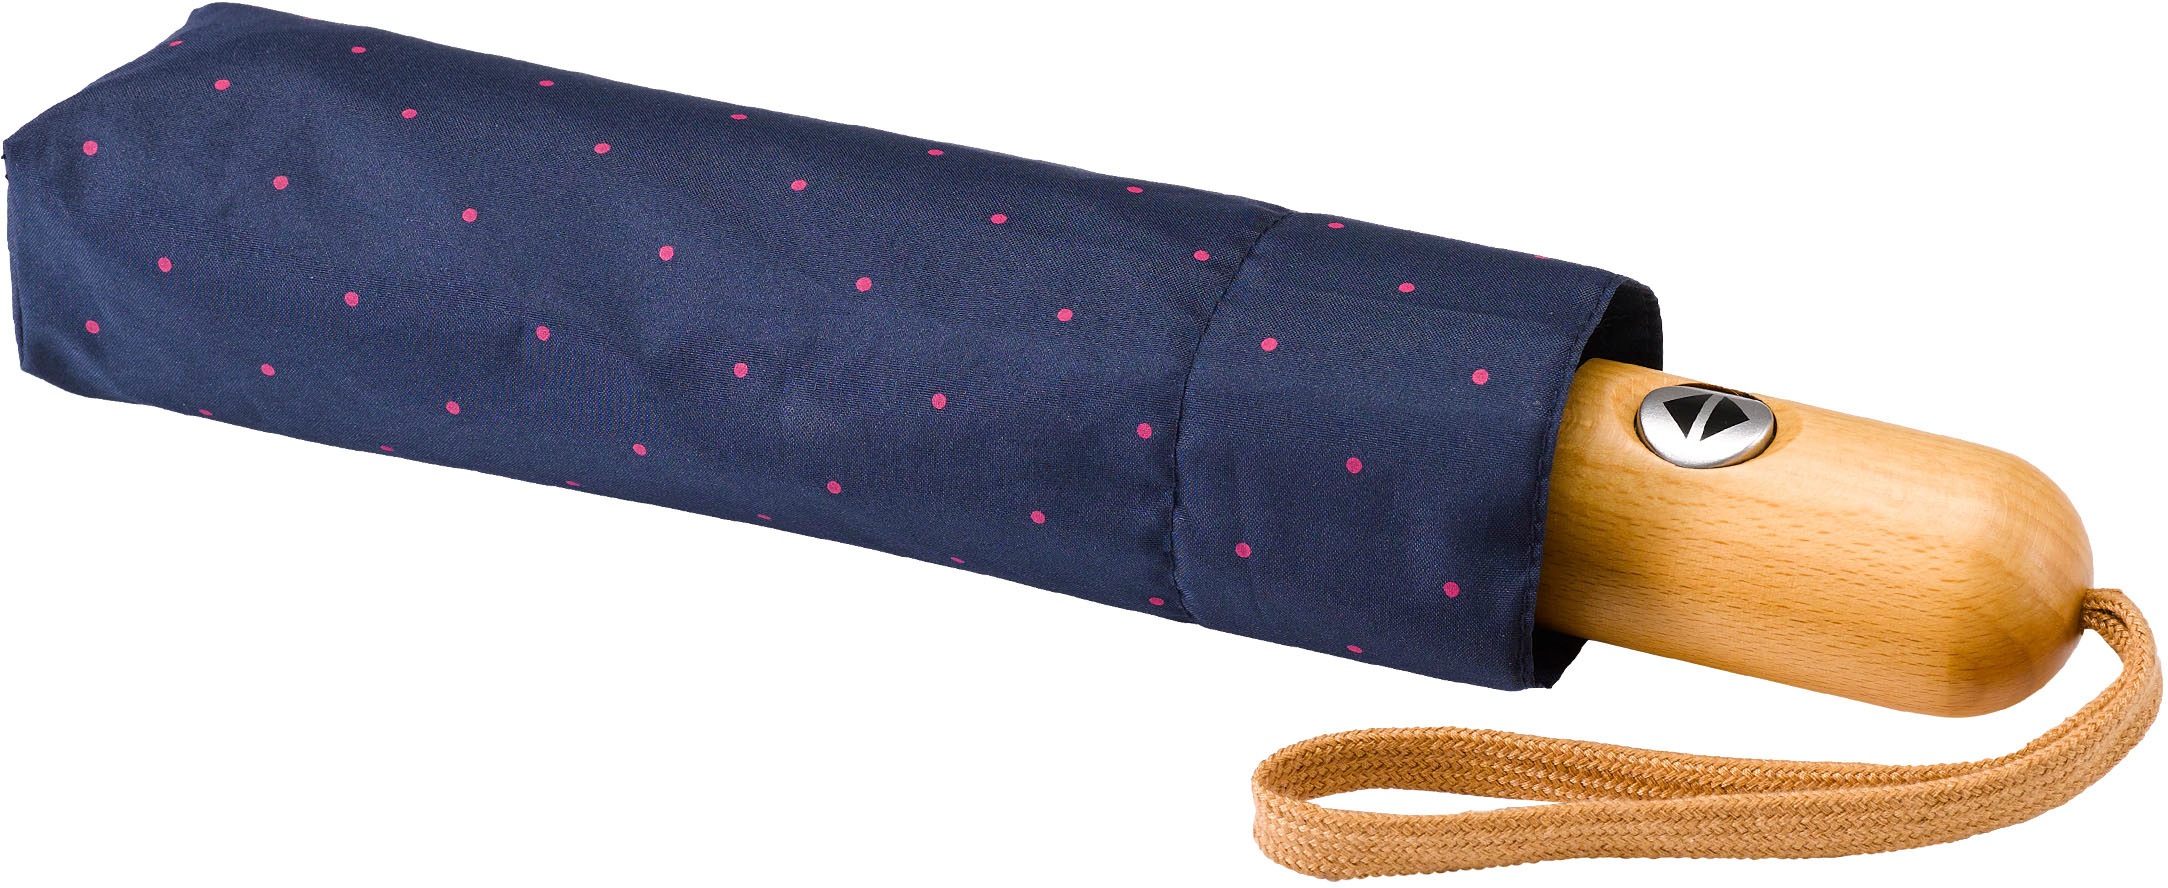 »Umwelt-Taschenschirm, pink« | online BAUR kaufen Taschenregenschirm EuroSCHIRM® Punkte marine,